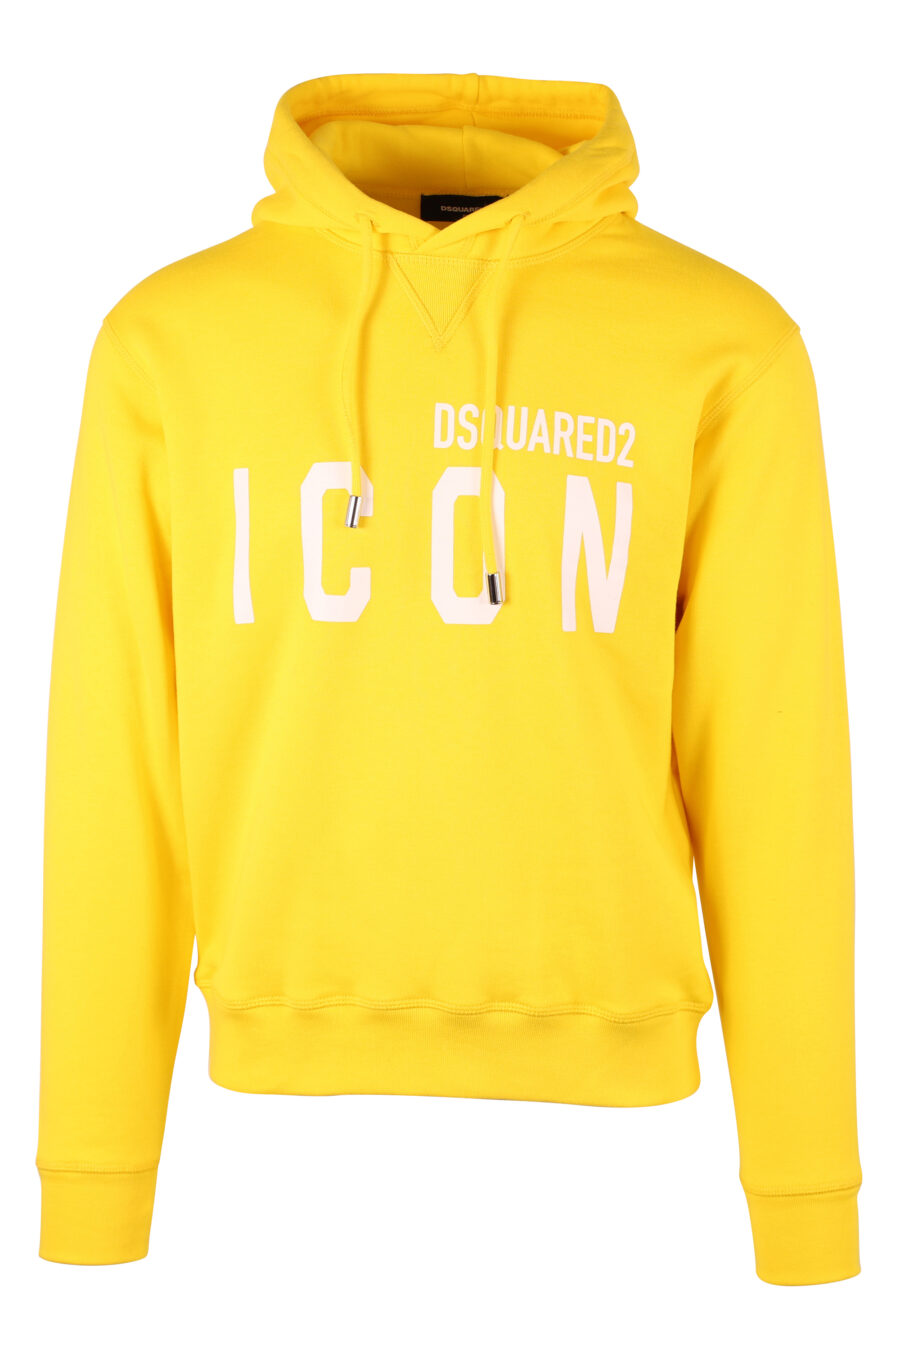 Sweat à capuche jaune avec double logo "icon" - IMG 9736